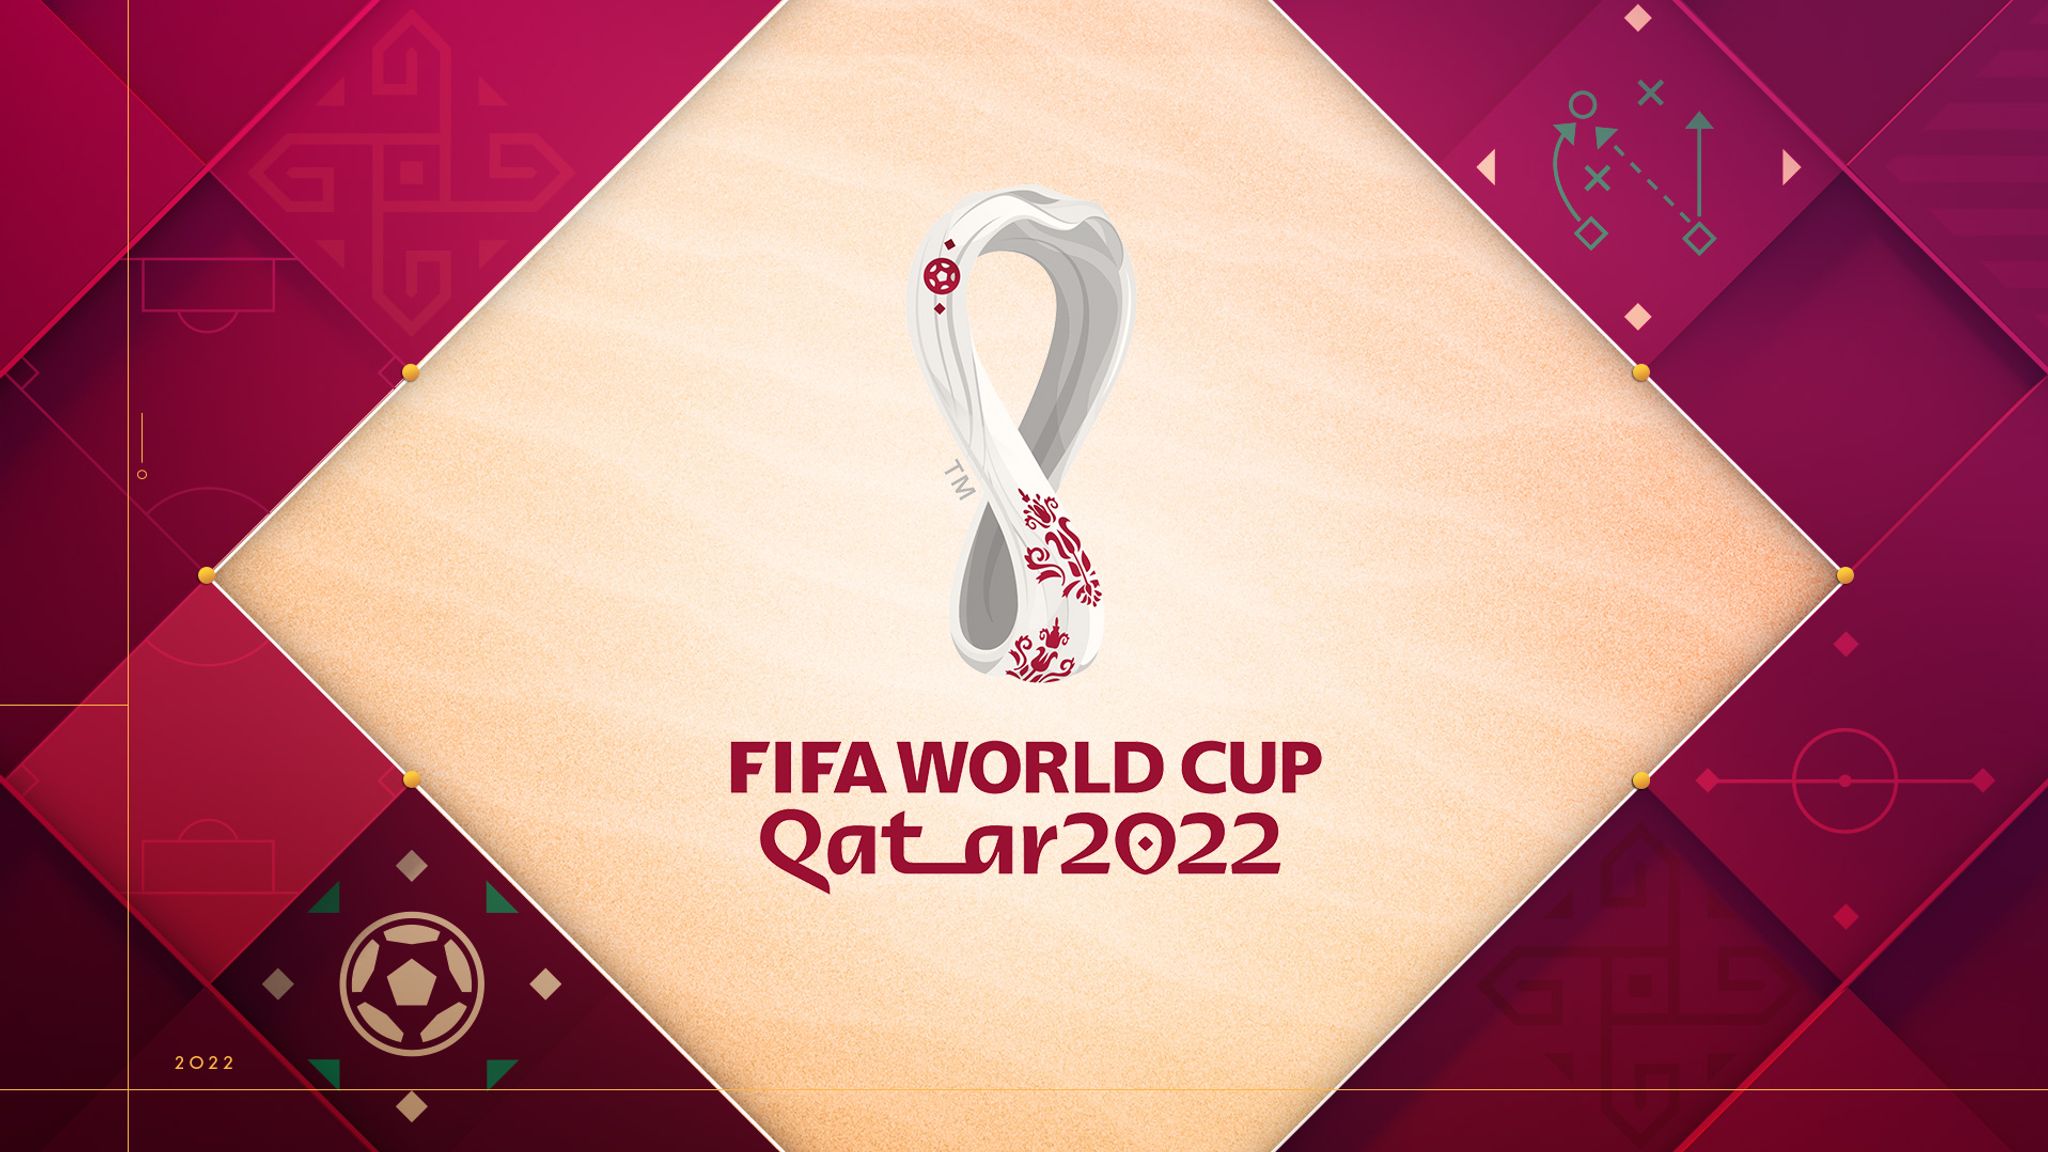 Китайский аналог TikTok будет показывать все матчи Чемпионата мира по футболу 2022 бесплатно